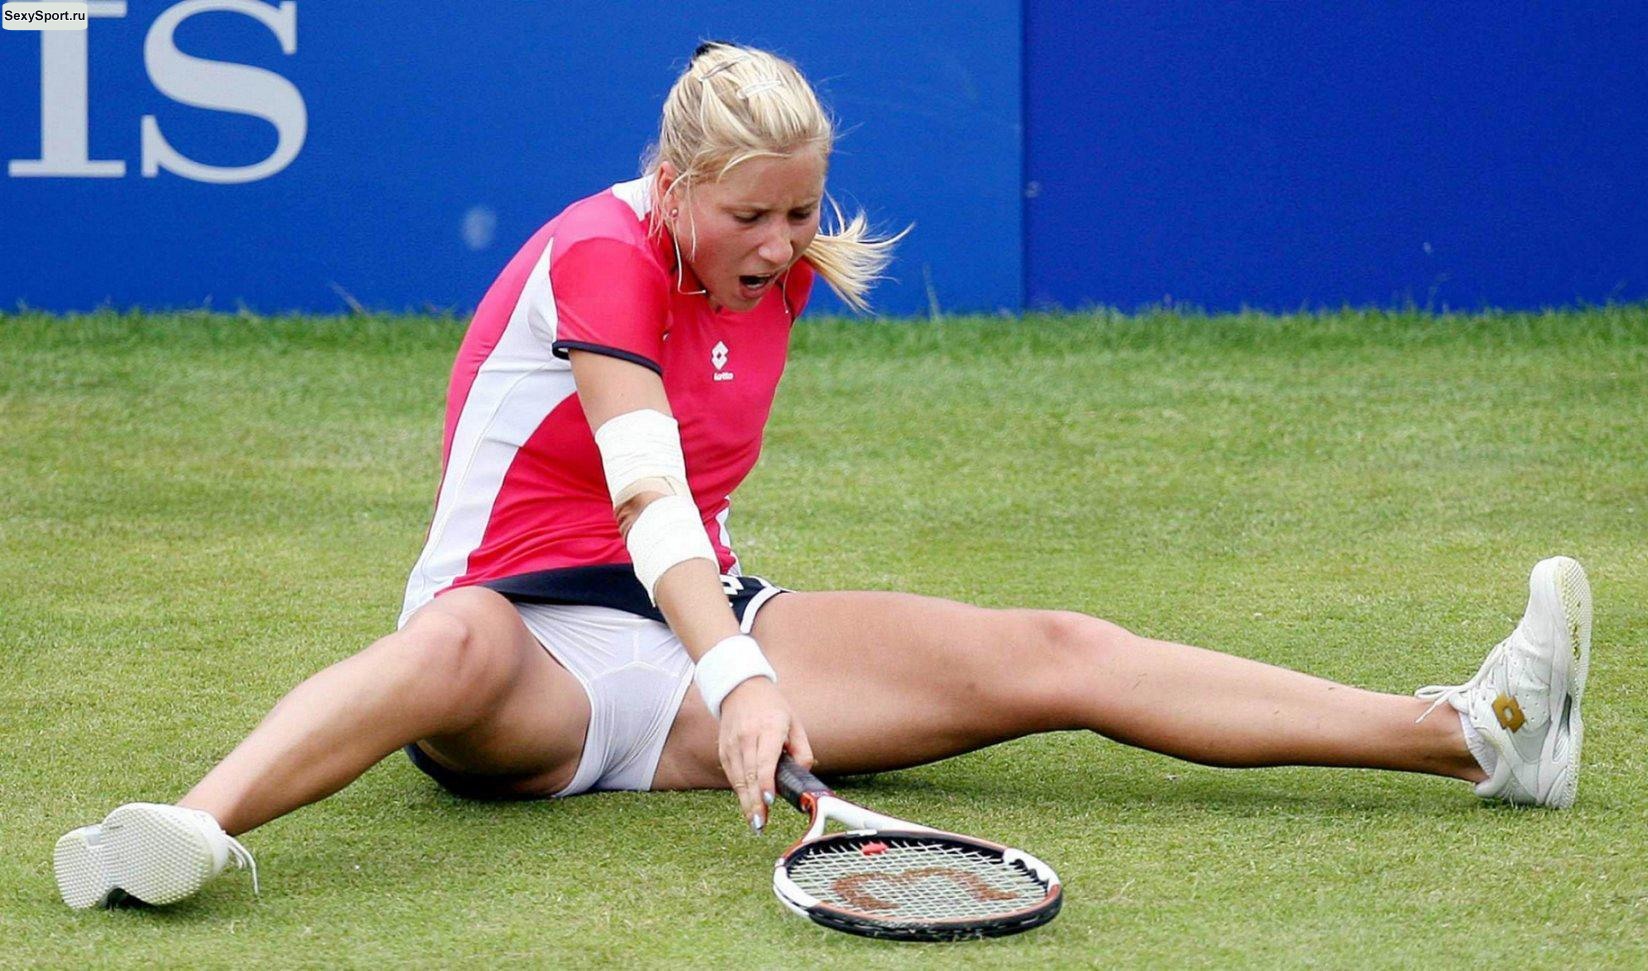 Теннисистка сидит на траве и растягивает ноги, показывая свои секреты